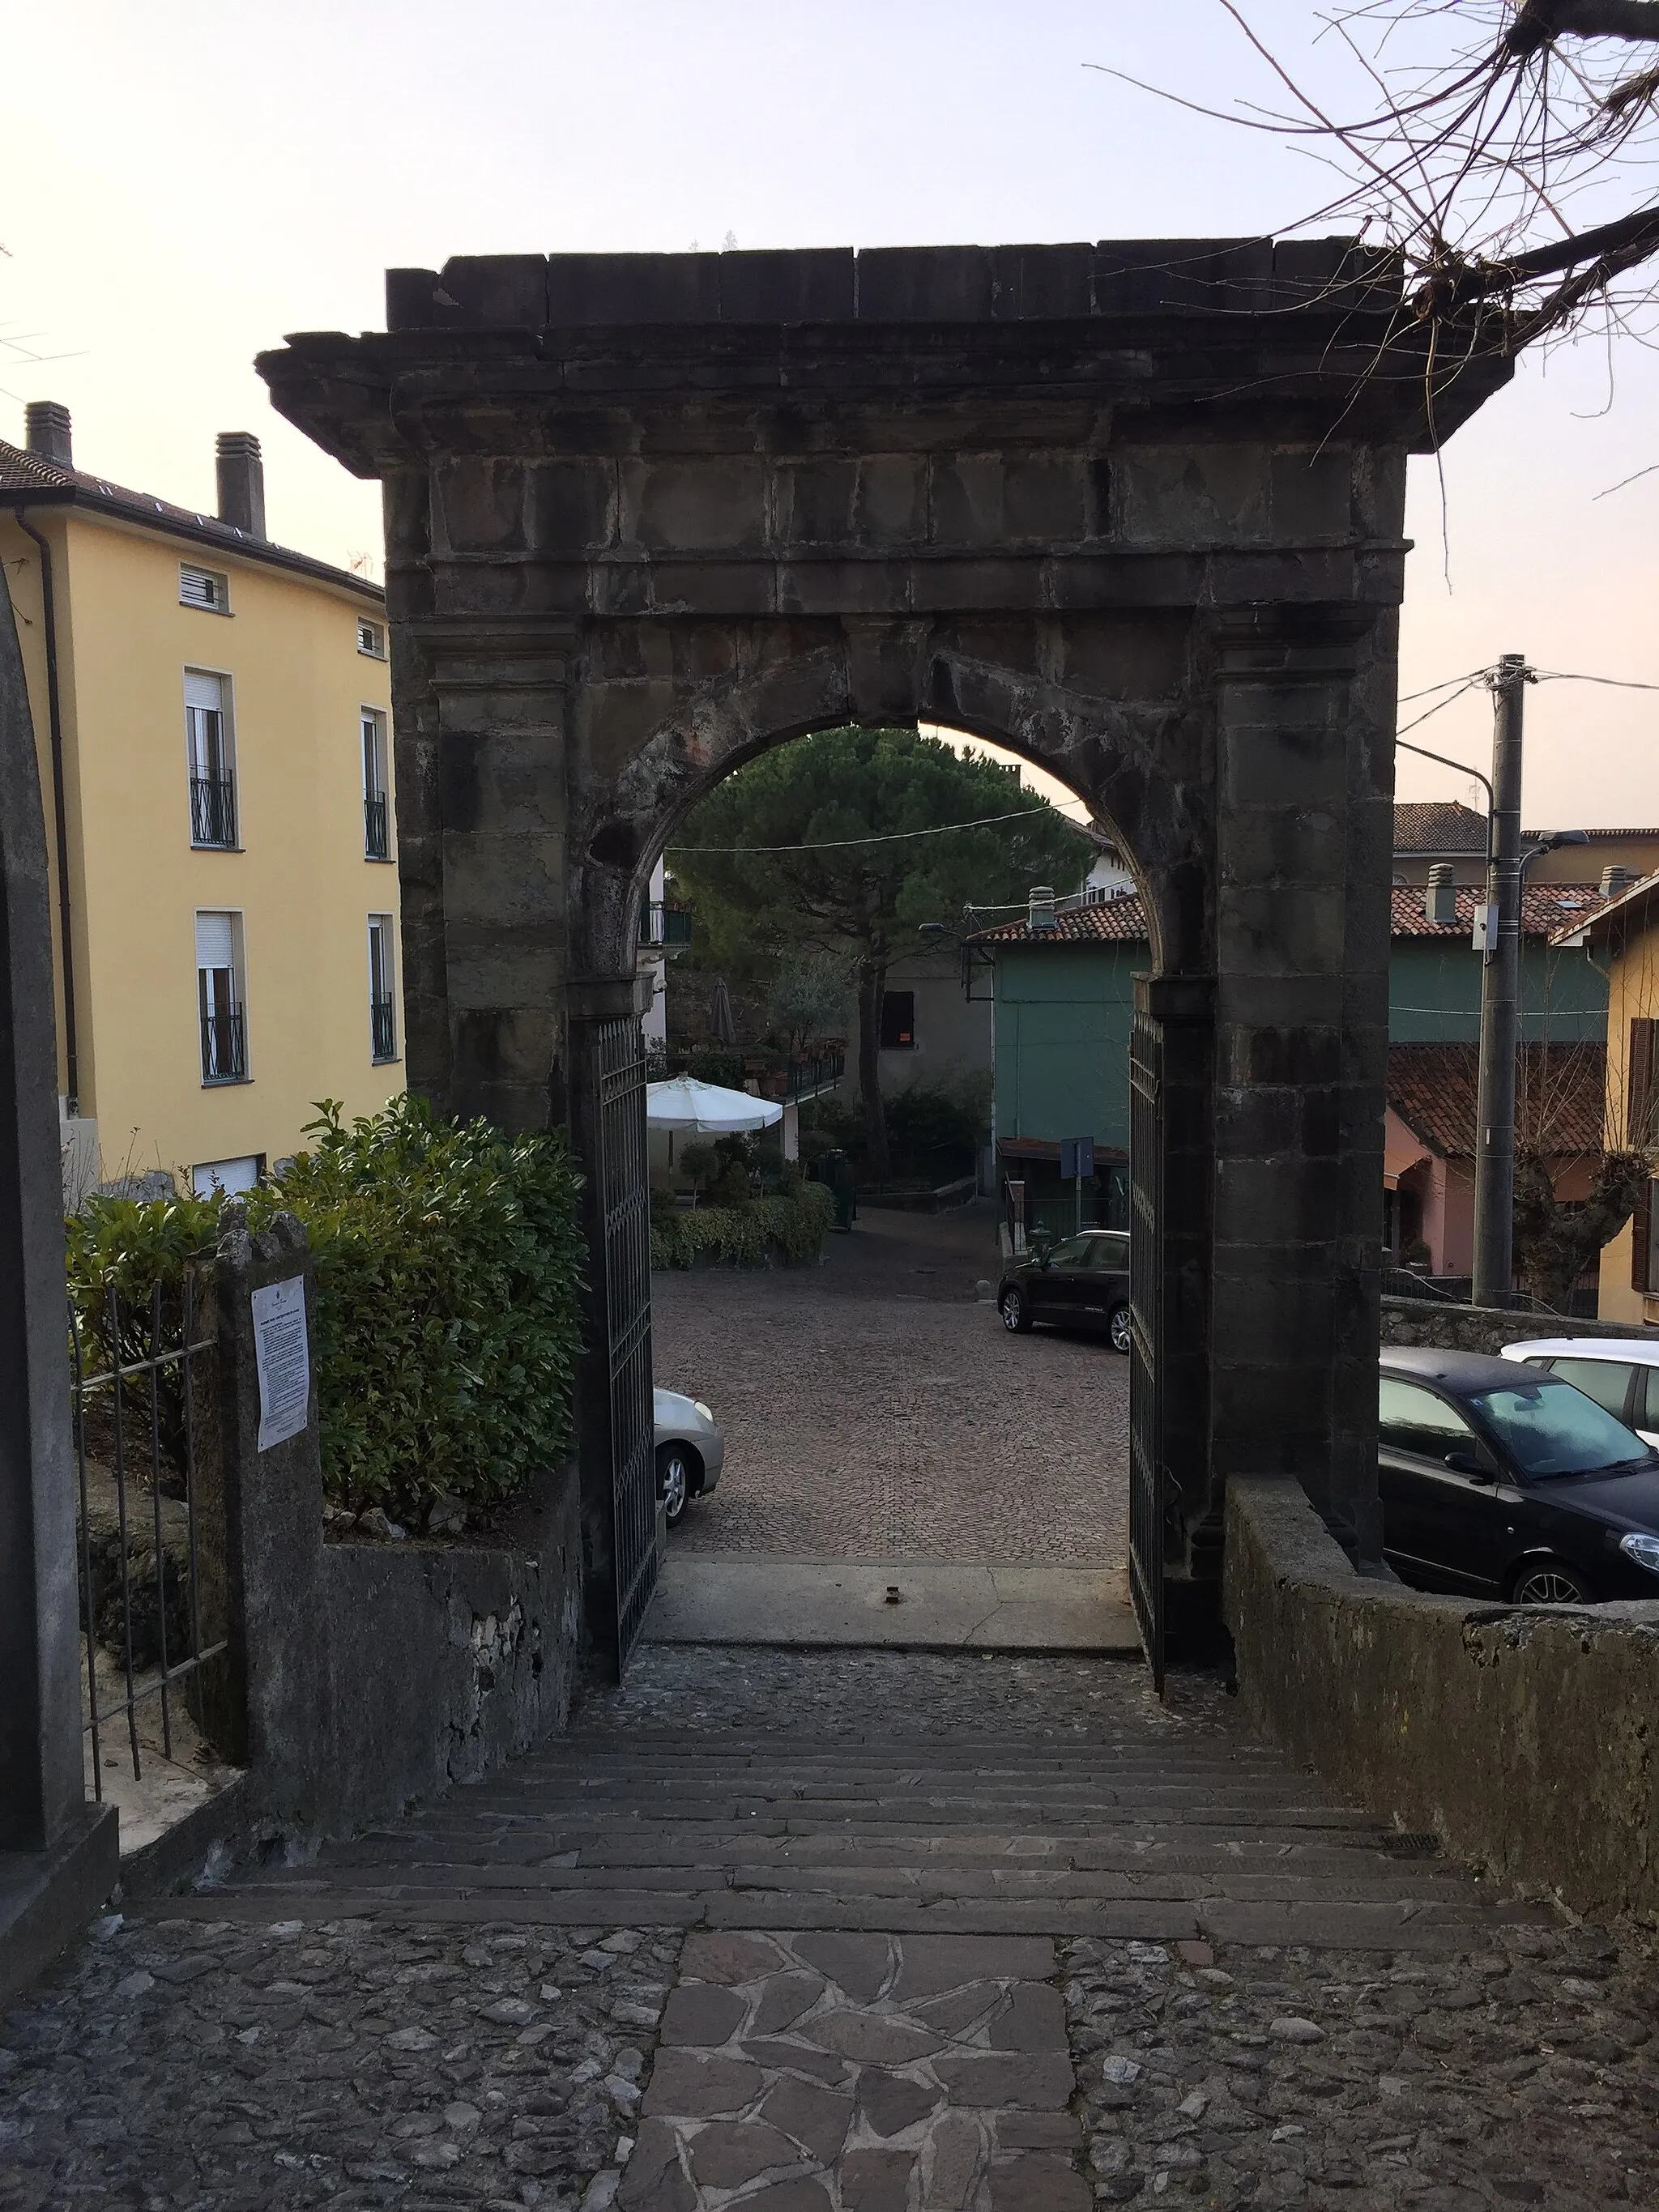 Photo showing: L'arco posto all'ingresso di Via delle Cappelle a Somasca - Frazione di Vercurago, che collega il Santurario di San Gerolamo alla località eremitica della Valetta.